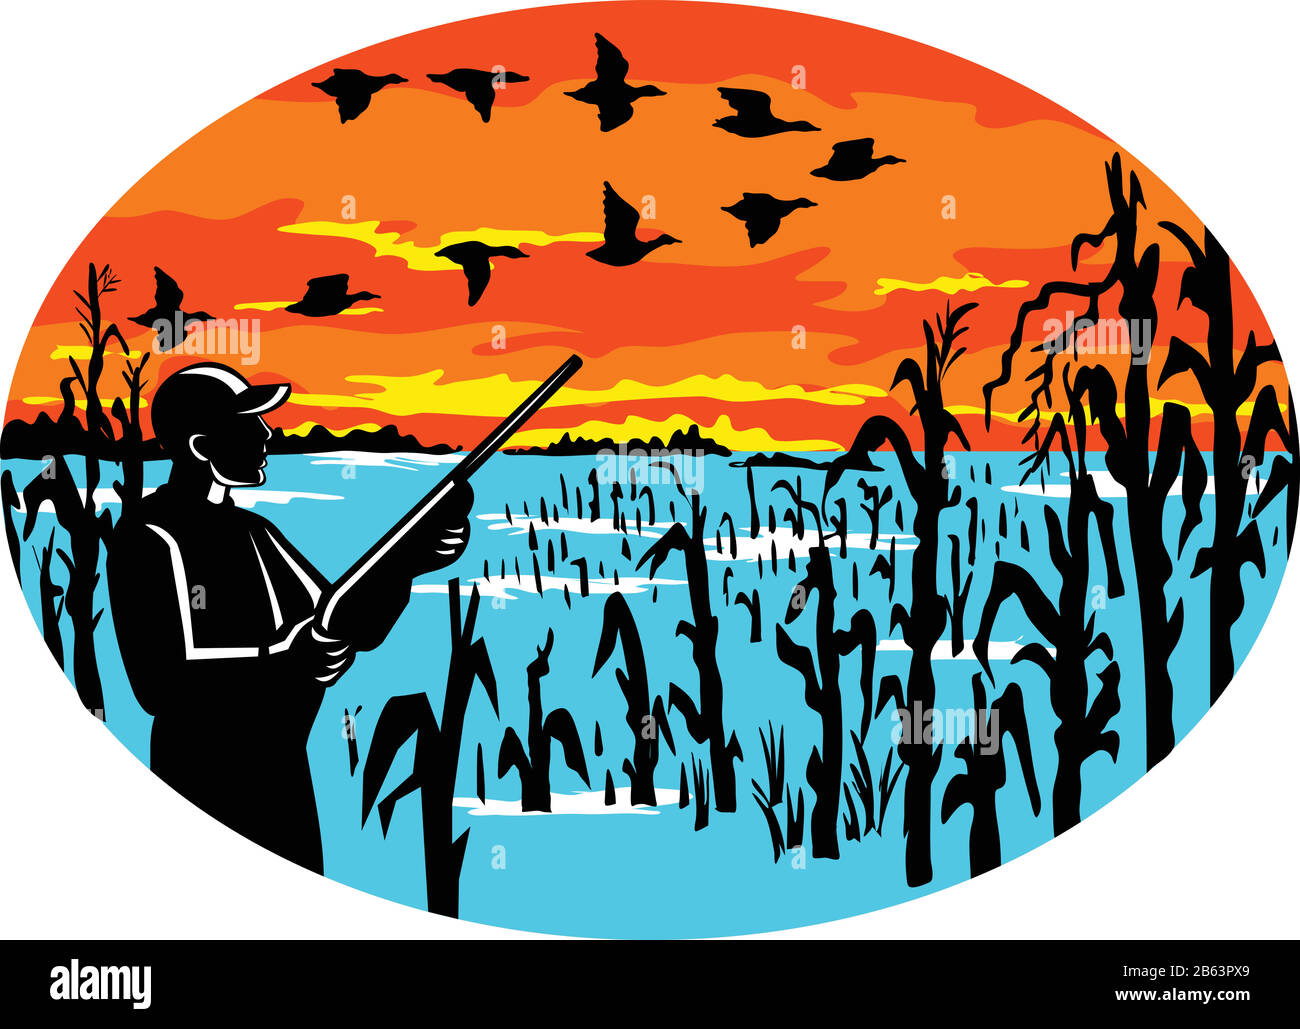 Icône mascotte illustration d'un chasseur de canard avec fusil dans le champ de maïs inondé tir à une formation d'oies vues du côté situé à l'intérieur de l'ovale sur isolat Illustration de Vecteur